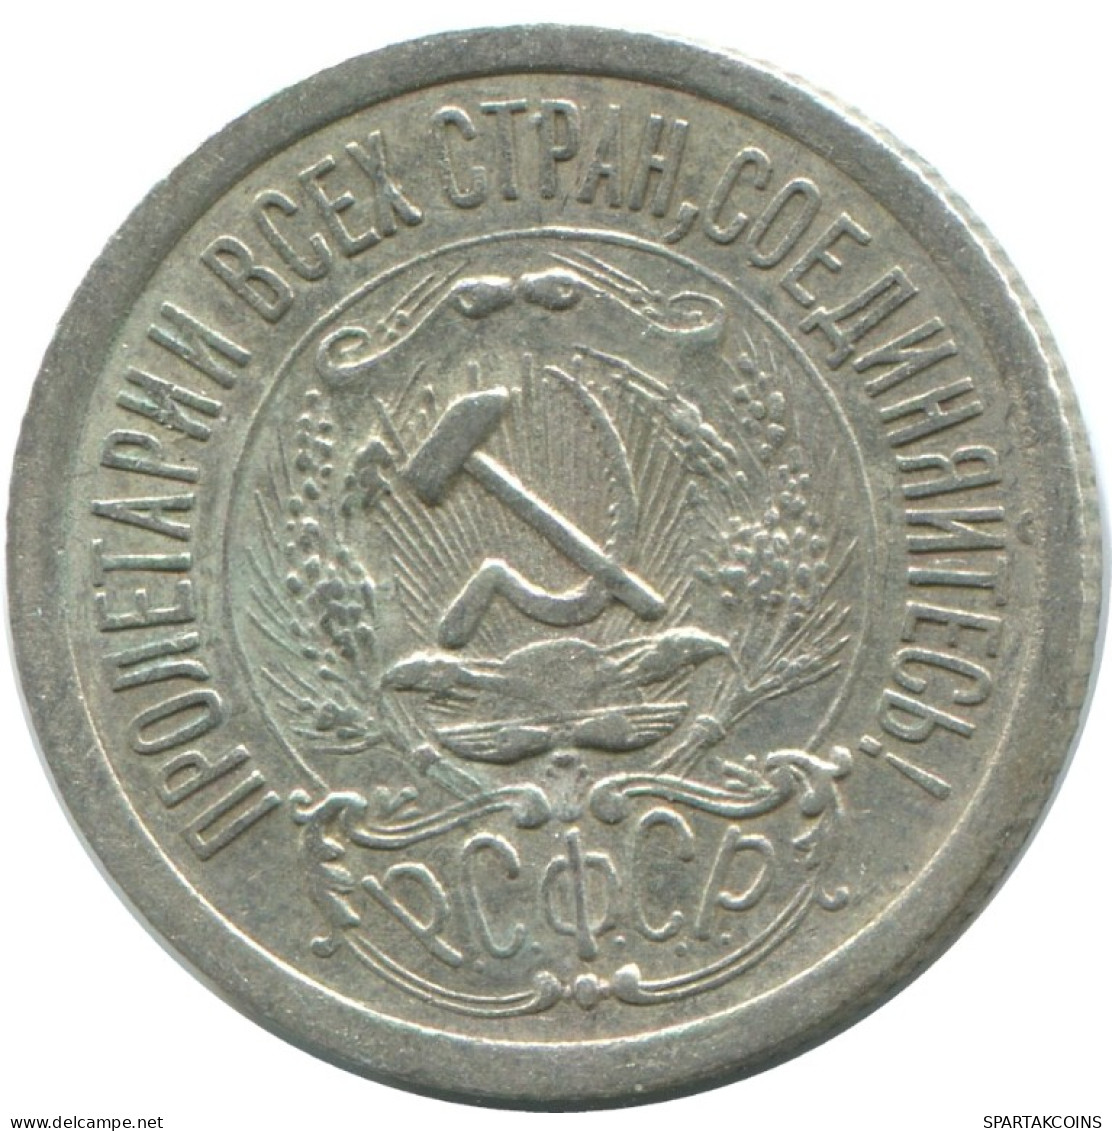 15 KOPEKS 1923 RUSSIA RSFSR SILVER Coin HIGH GRADE #AF103.4.U.A - Rusland